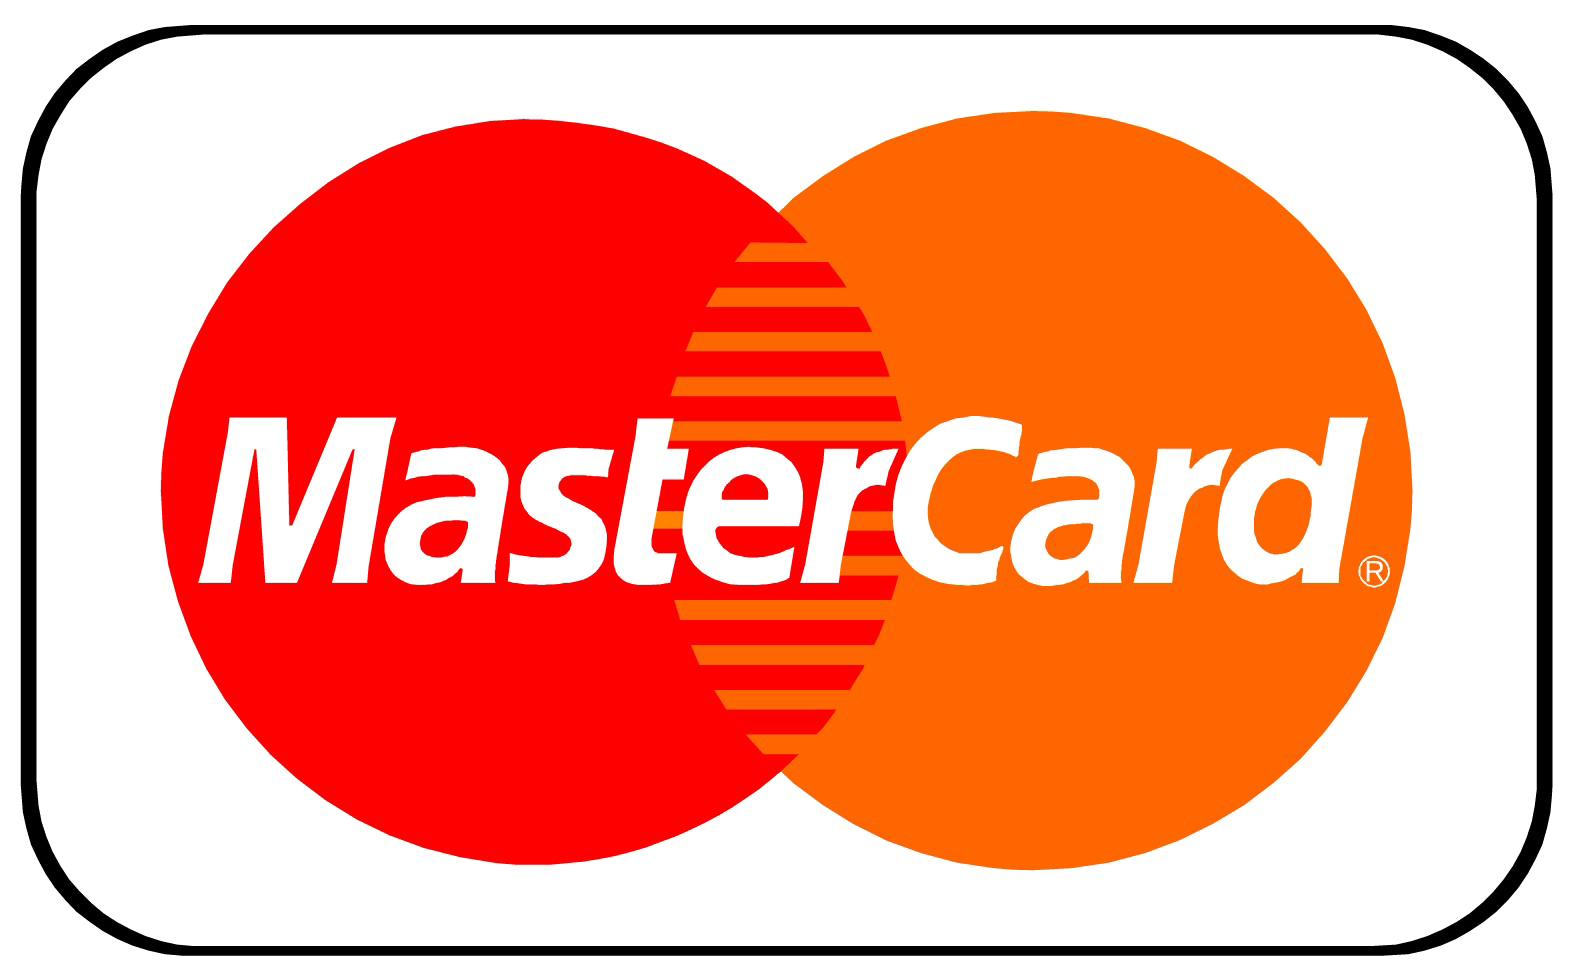 MasterCard logo imagen Transparente